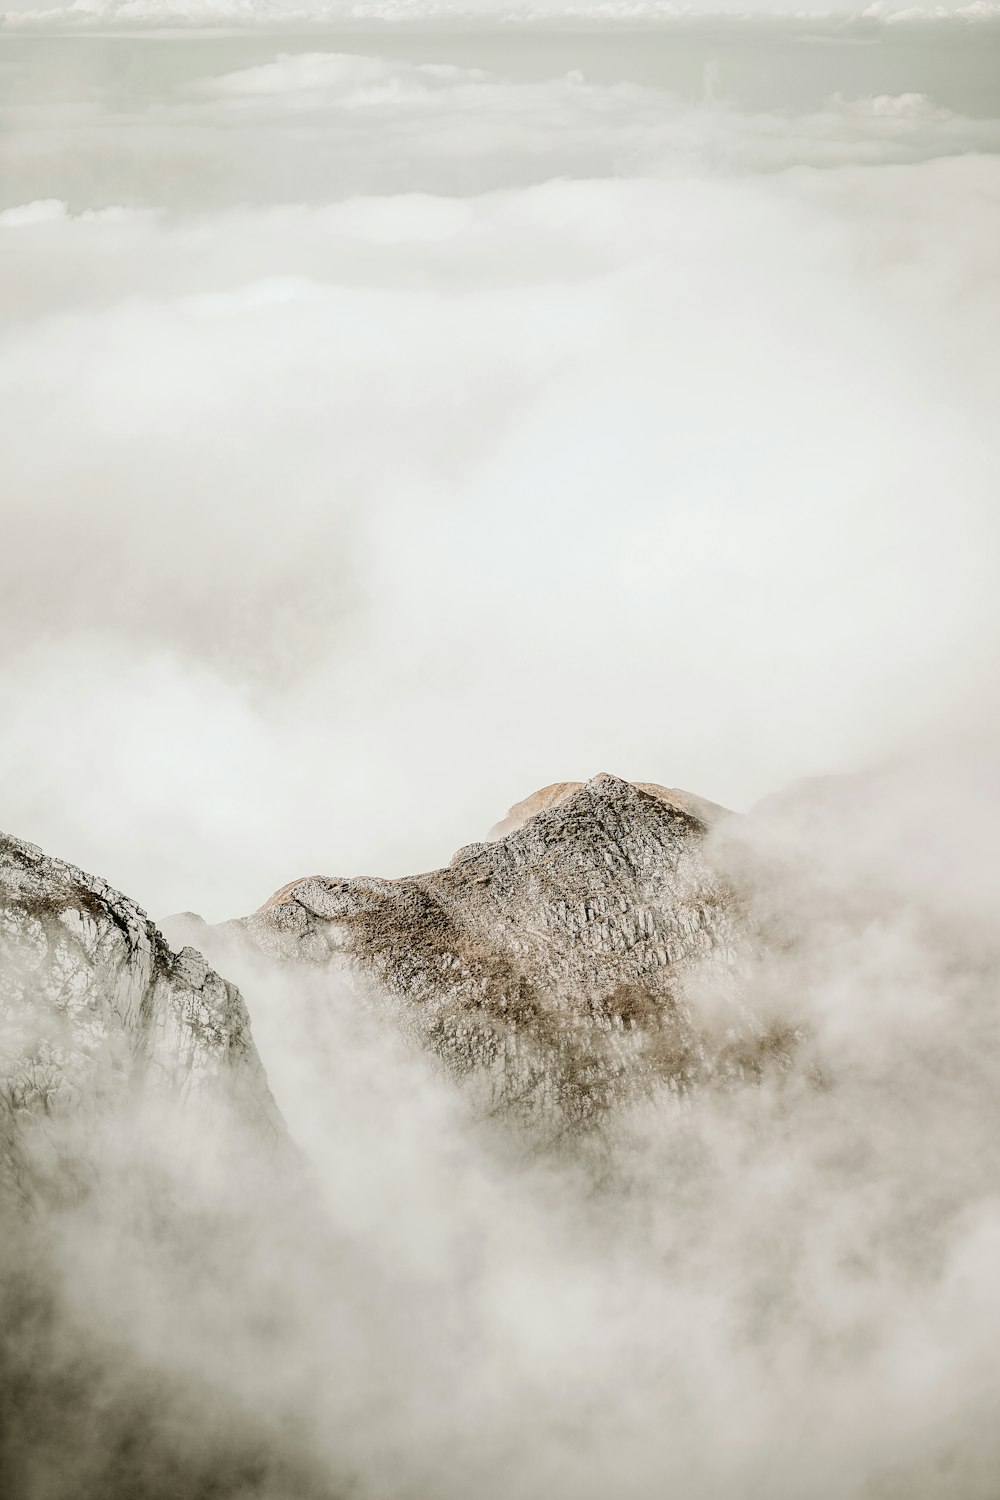 montagna marrone coperta di nuvole bianche